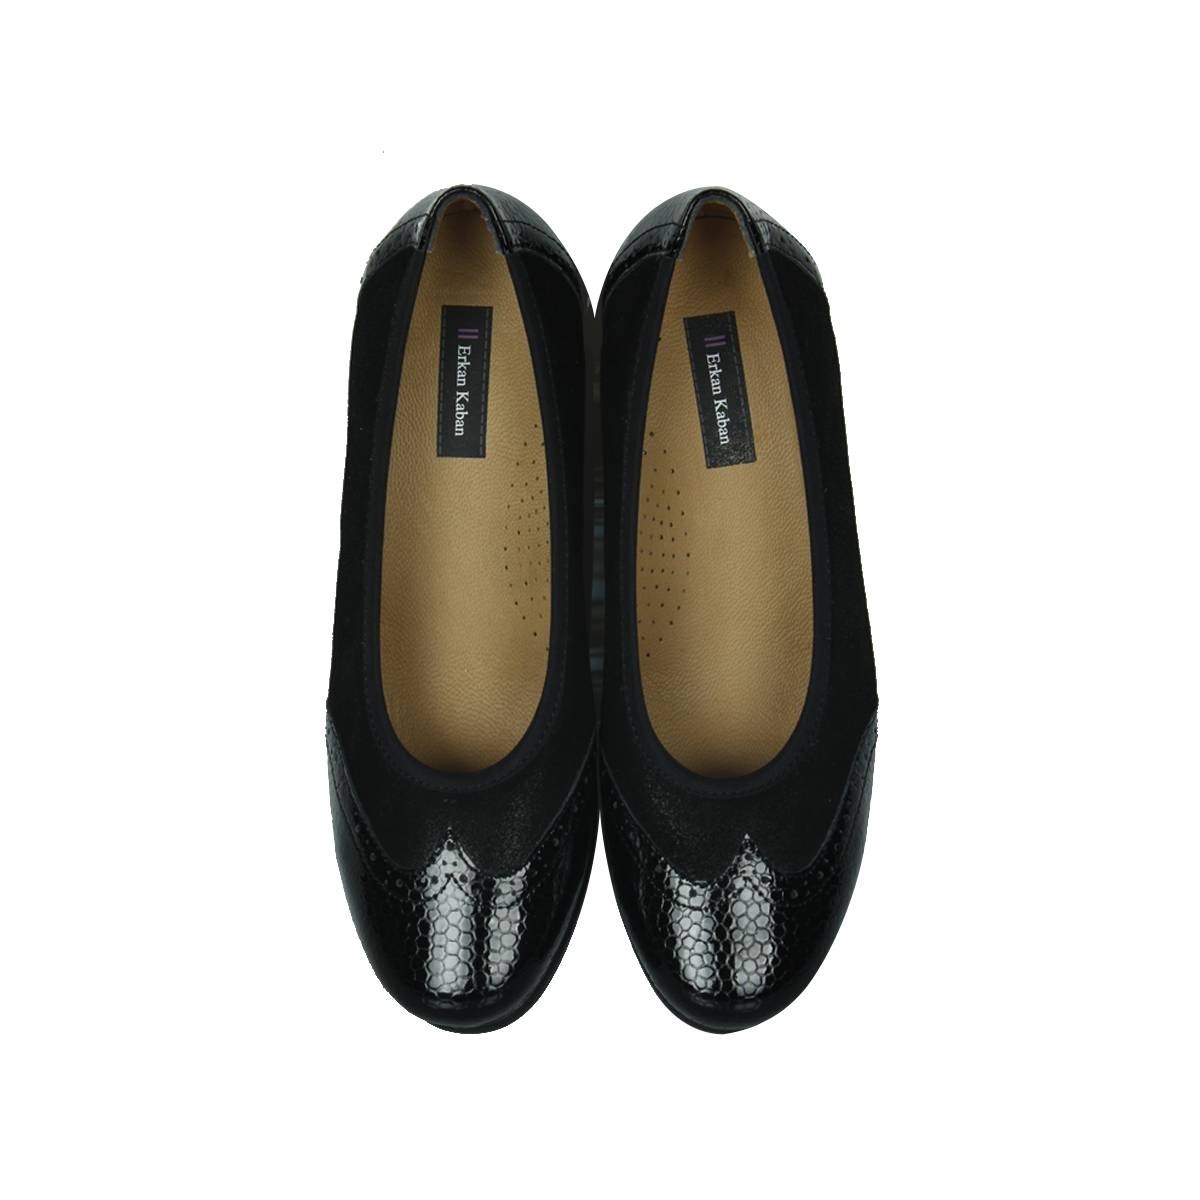 Flo - 6402 025 Kadın Siyah Günlük Büyük & Küçük Numara Ayakkabı. 4